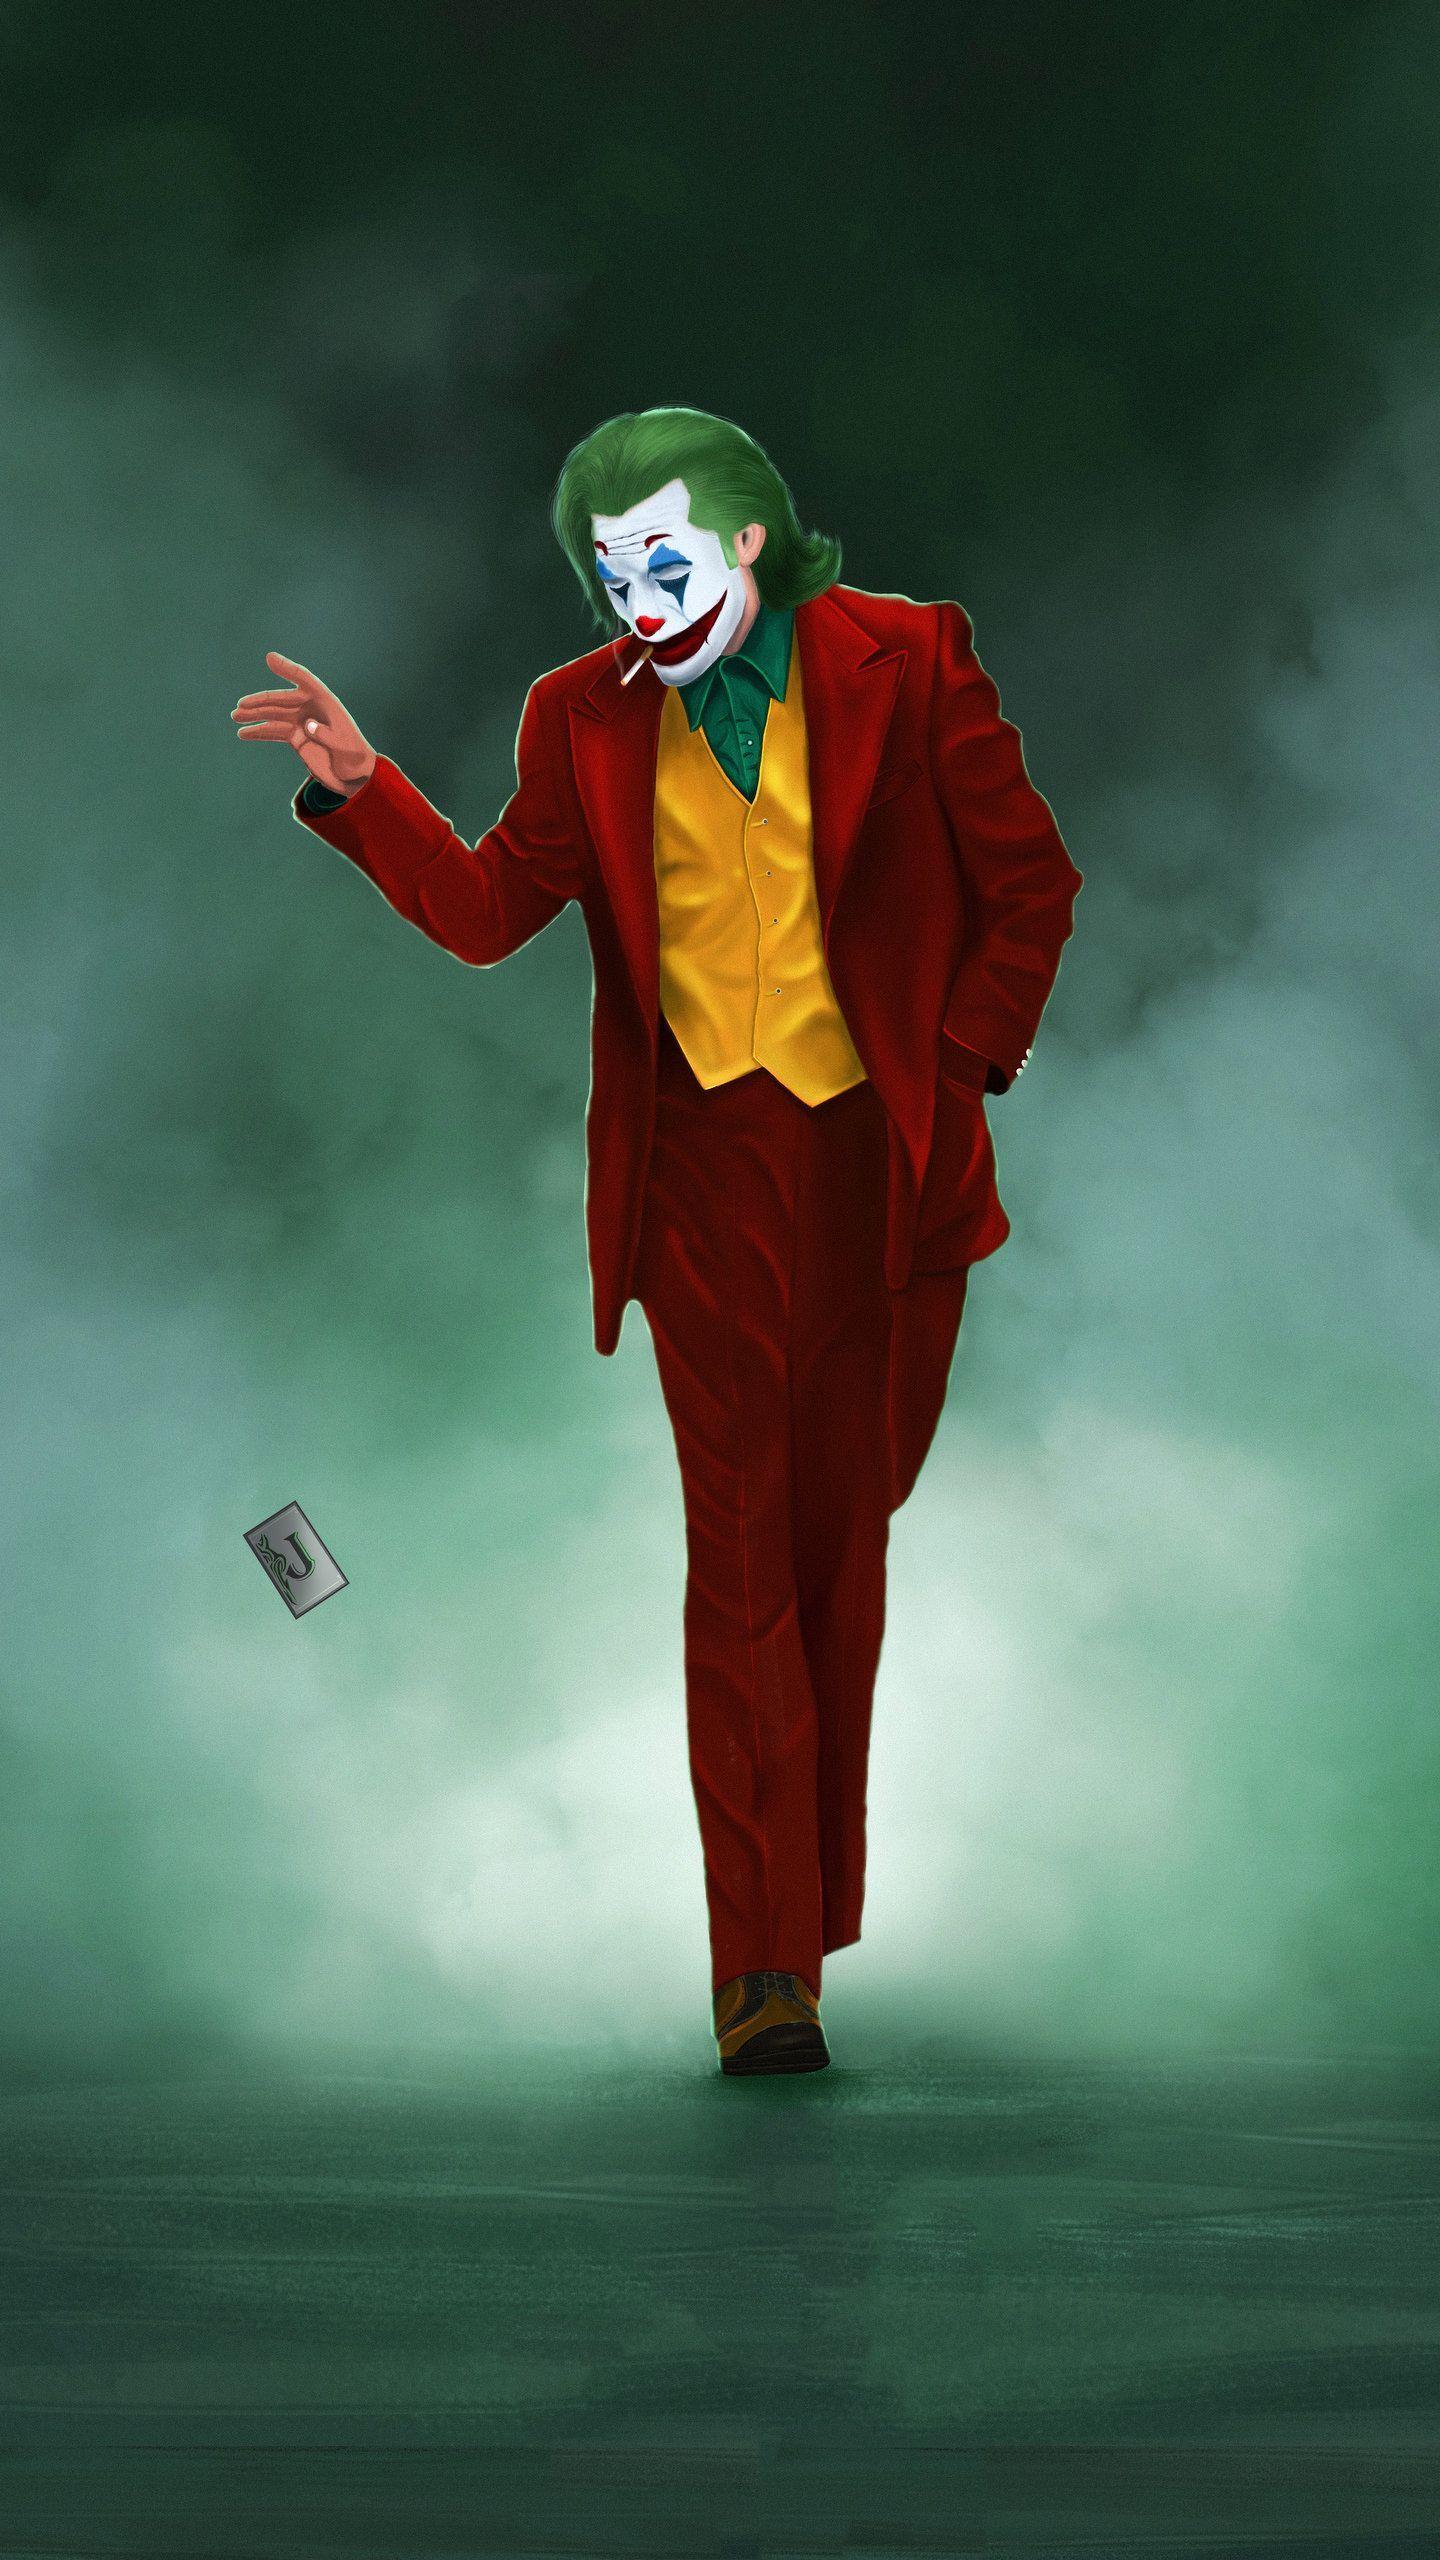 Joker wallpaper  Joker wallpaper added a new photo